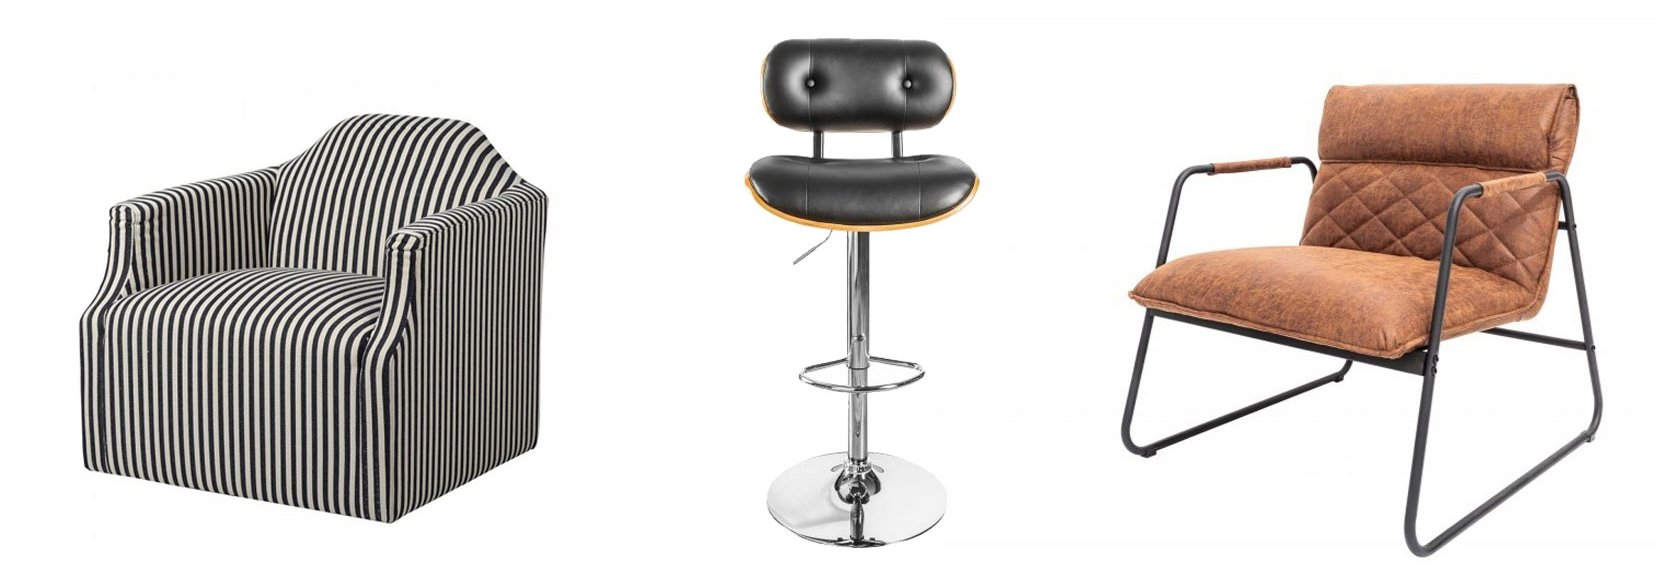 Štýlové retro pruhované kreslo Arkadda čierno-bielej farby, Dizajnová barová stolička Timna v retro štýle, Štýlové retro kreslo olympus z ekokože a kovu hnedej farby